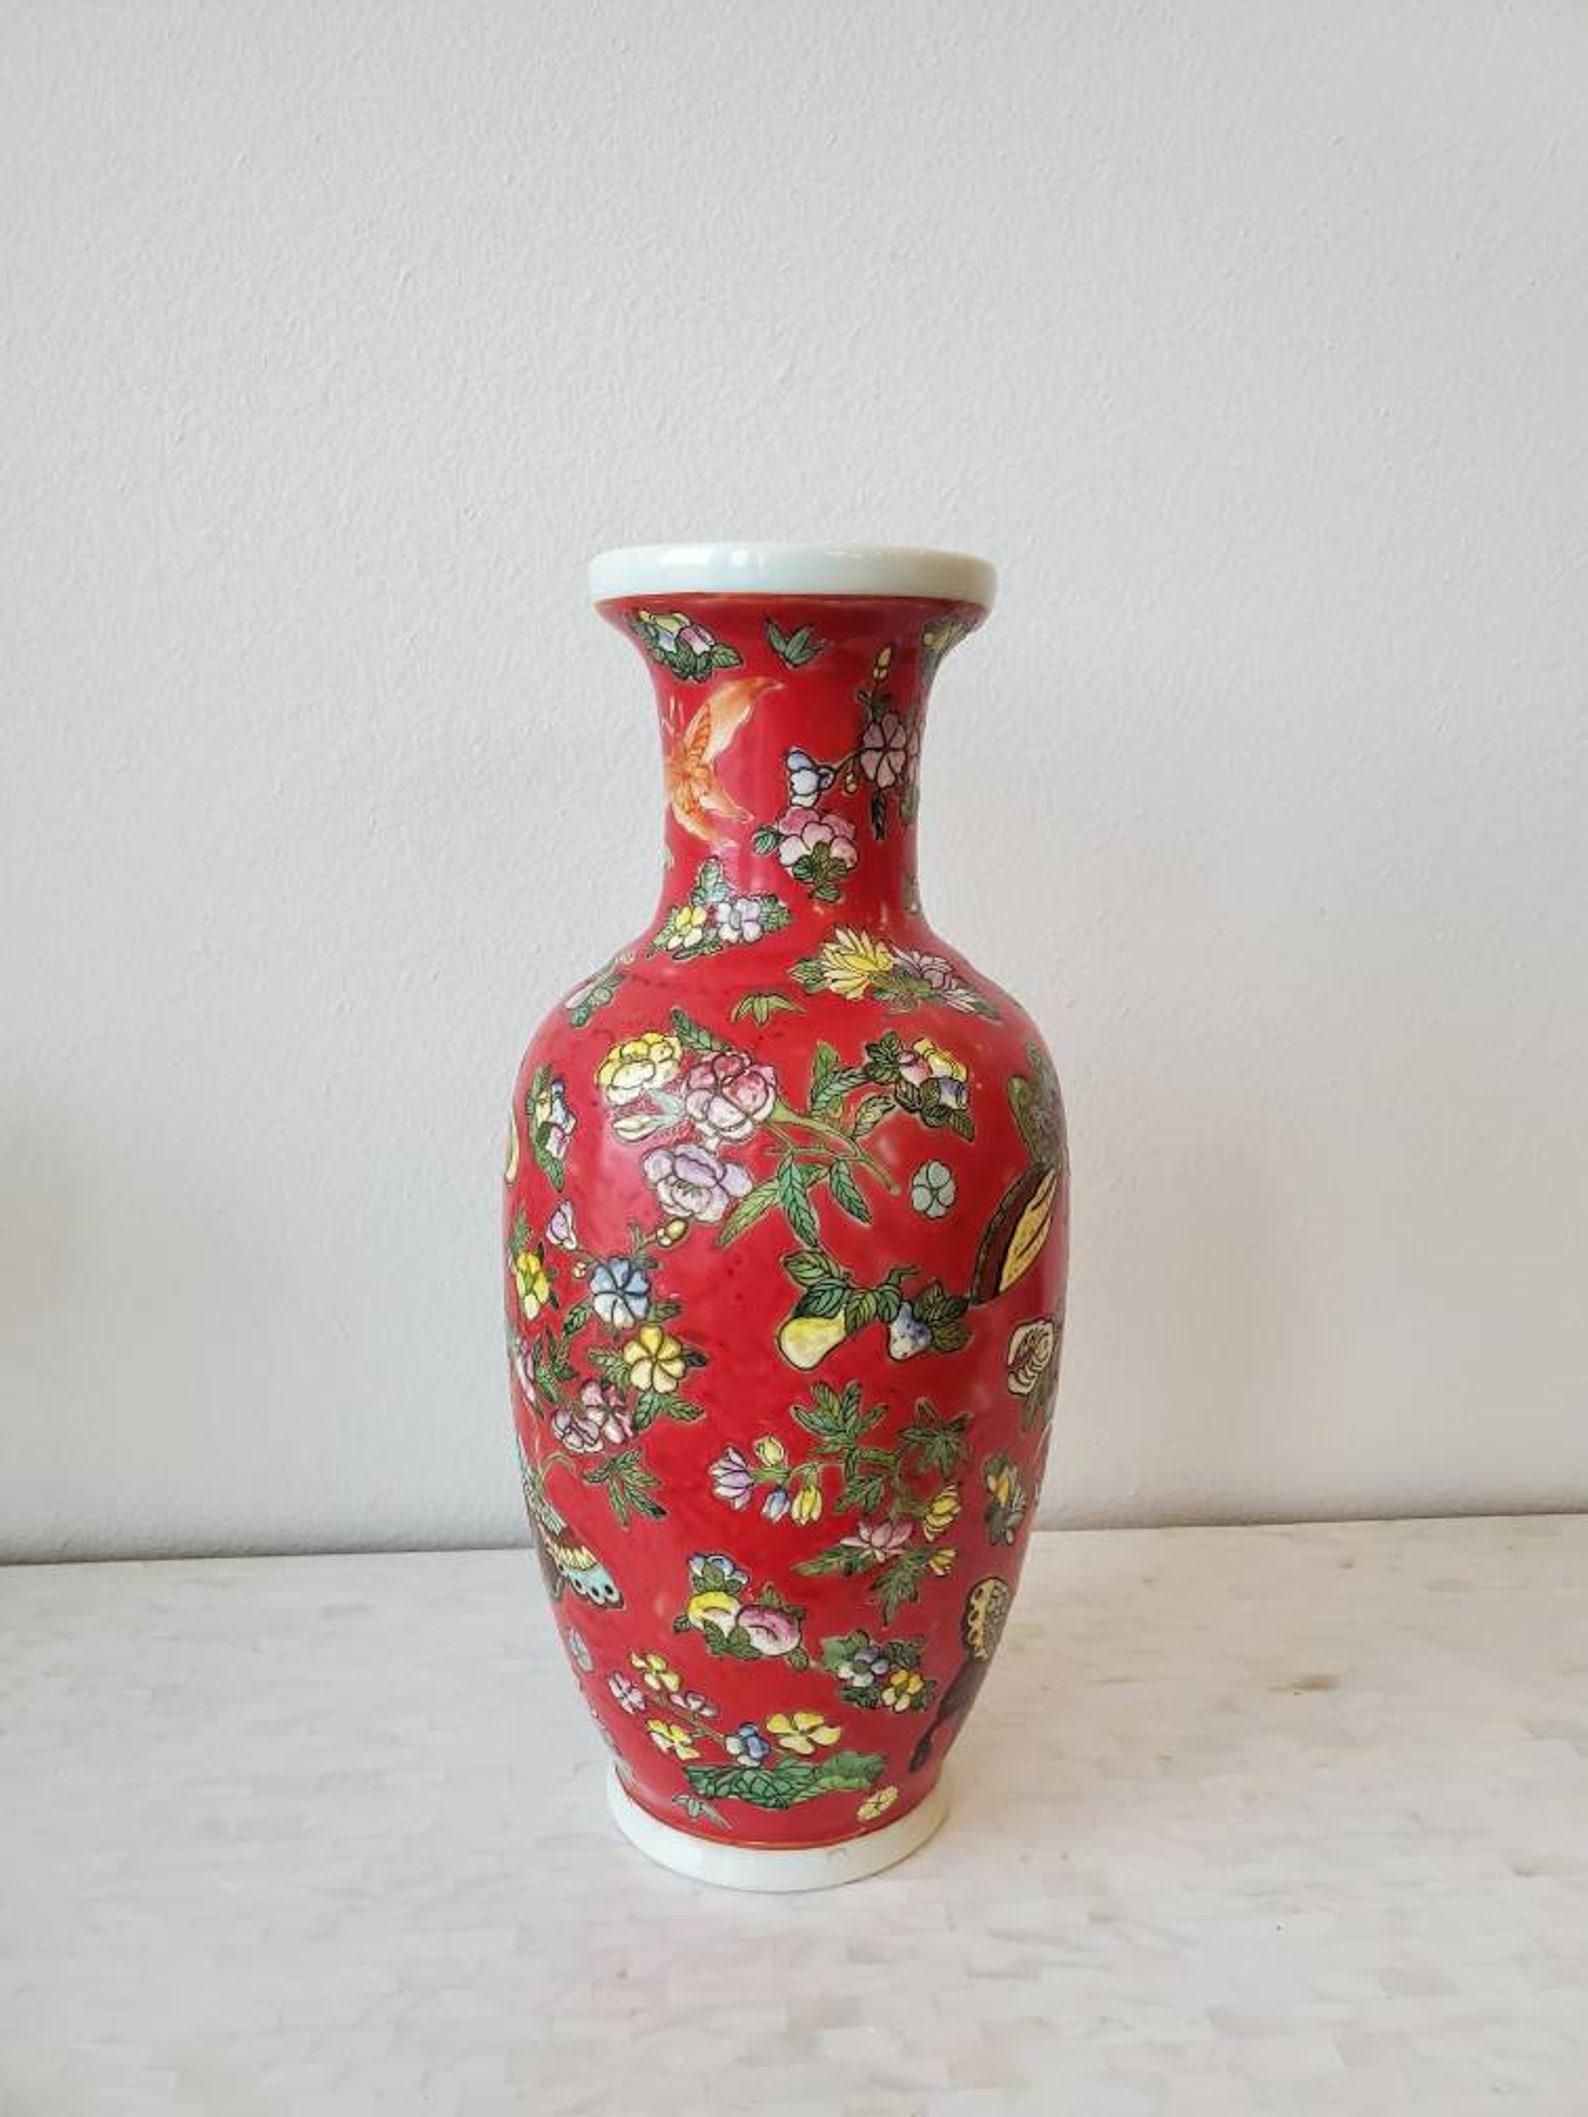 Un fabuleux vase vintage en porcelaine chinoise Maitland Smith. Très belle qualité, décoration polychrome exquise peinte à la main dans un motif floral et de faune asiatique, peint à la barbotine, avec des papillons fantaisistes et des fleurs de